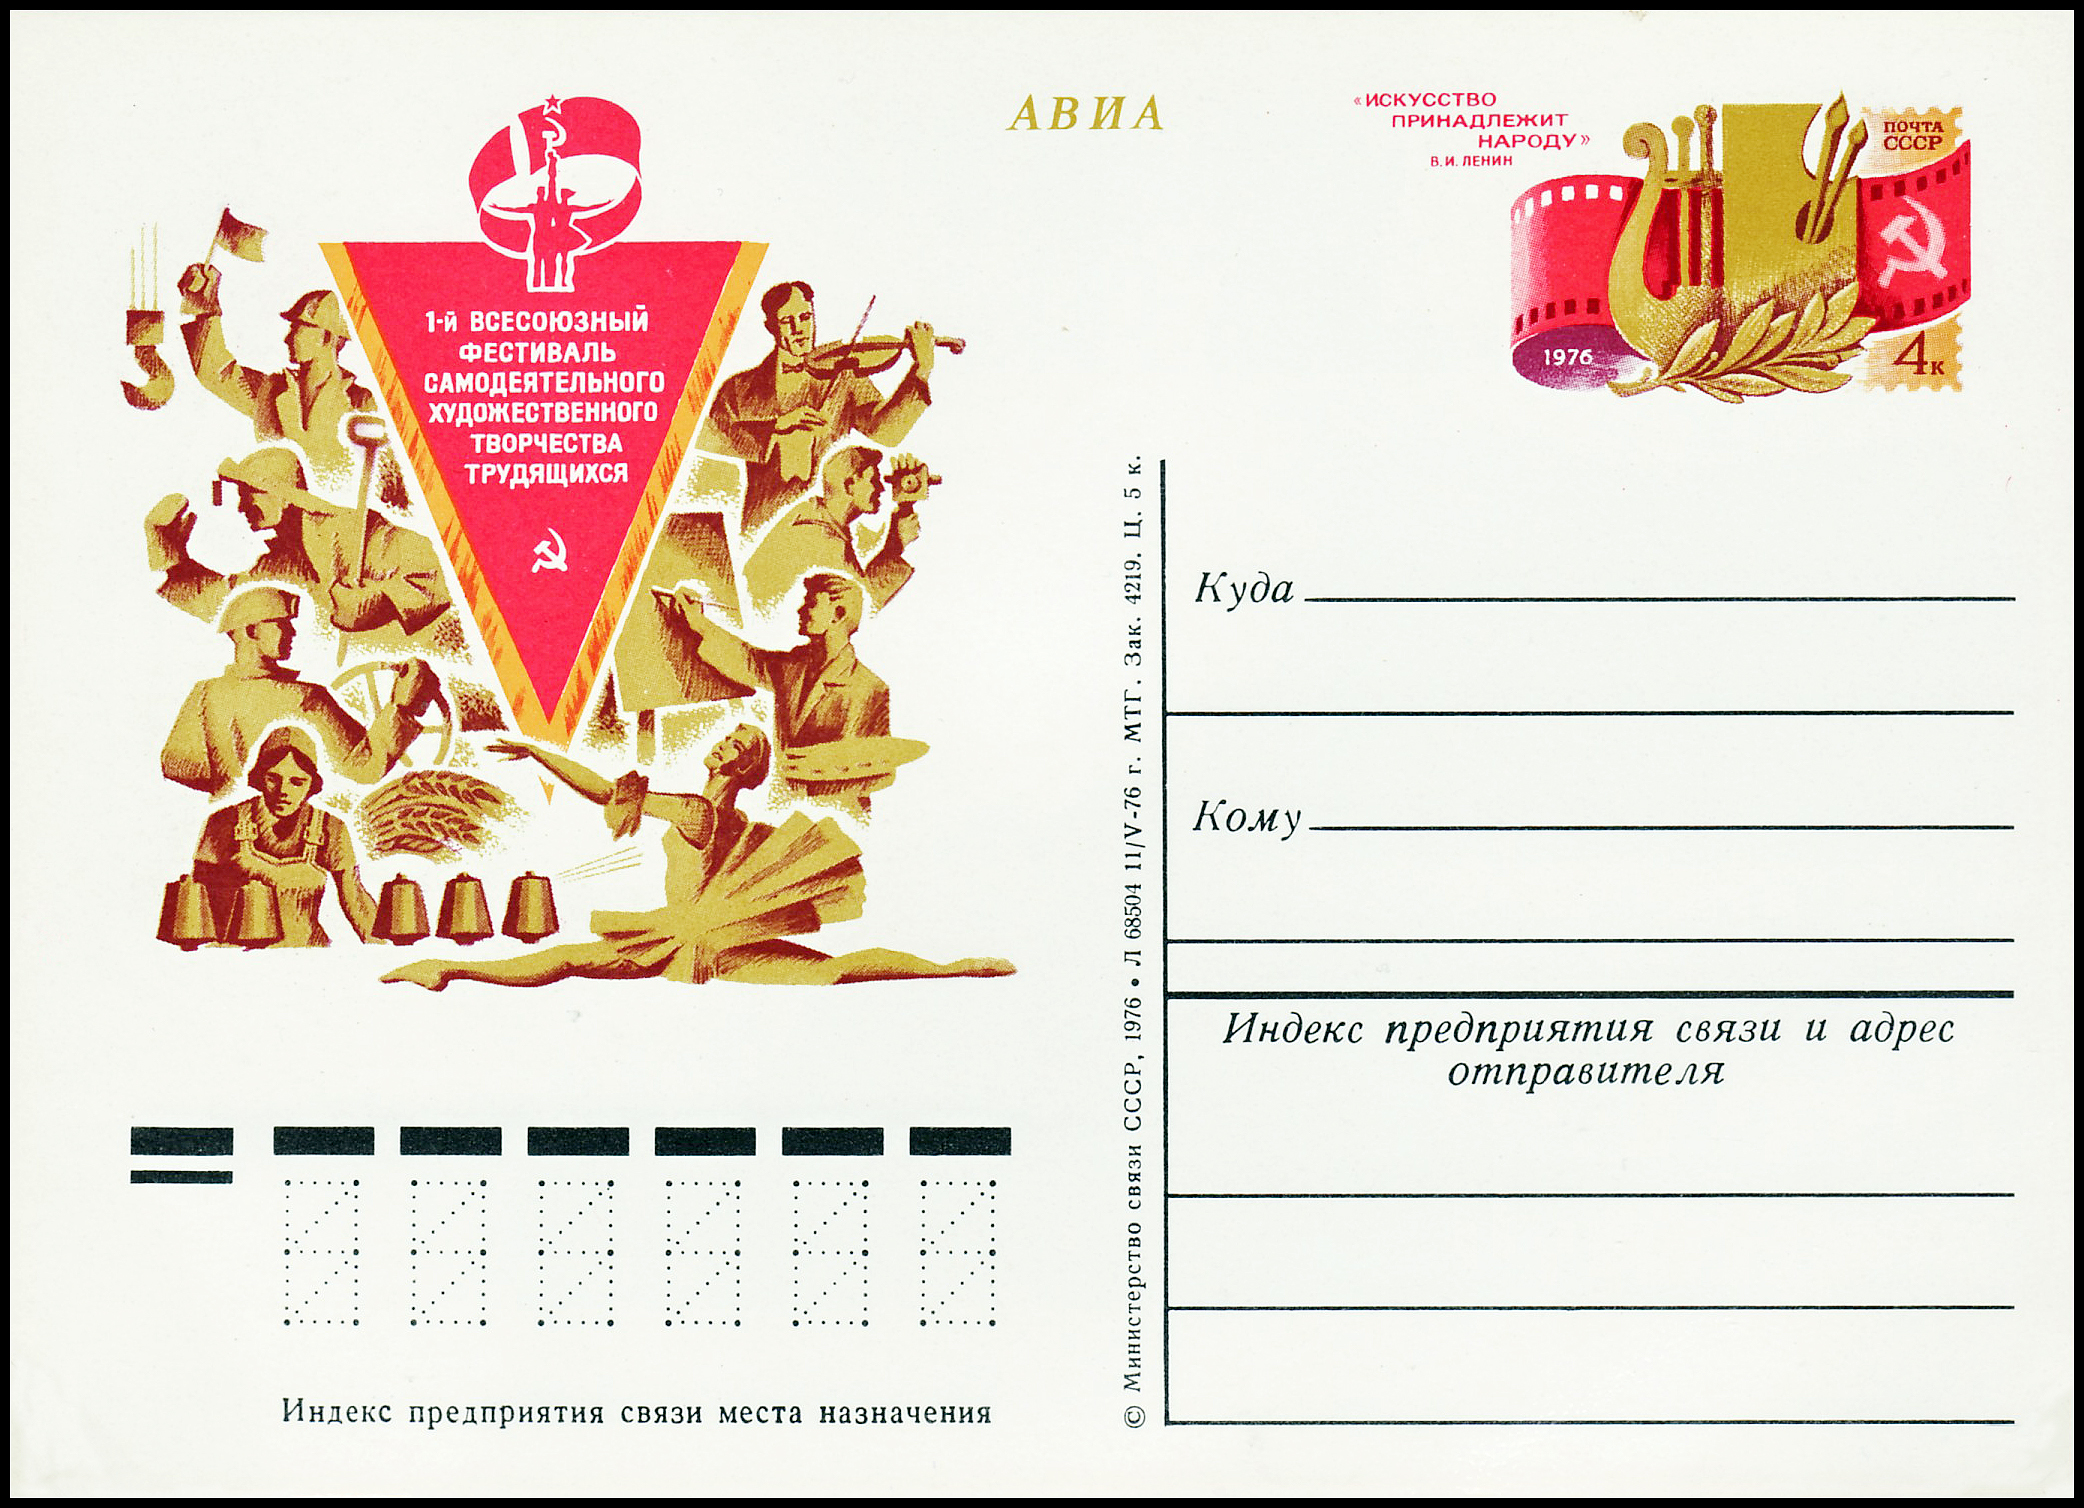 USSR PCWCS №41 All-Union Festival of amateur art